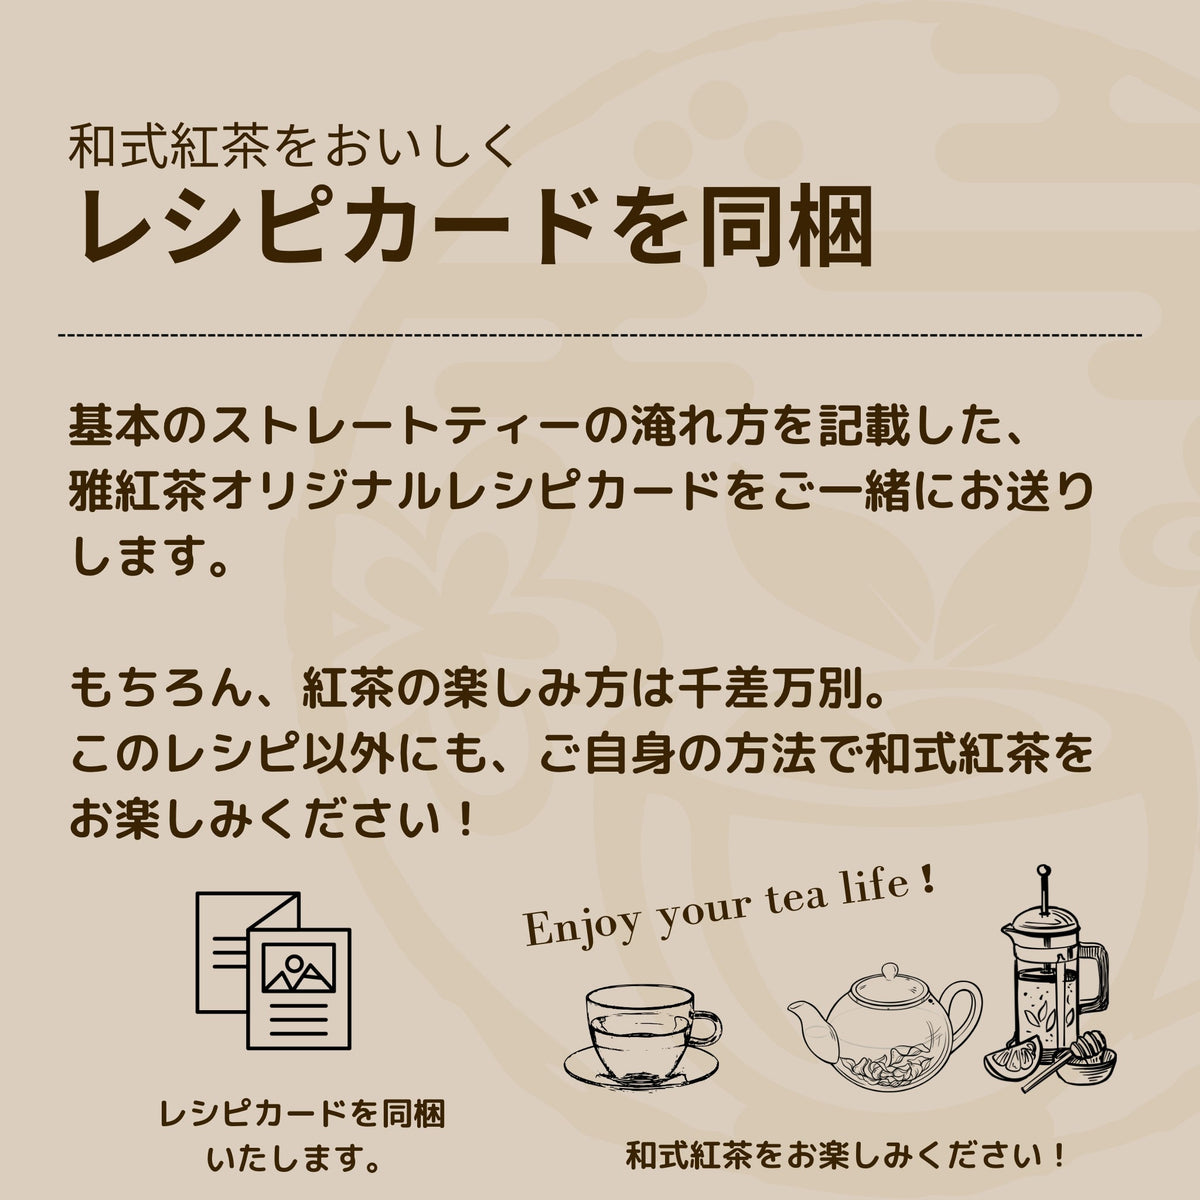 関東の和式紅茶 5パックアソートセット